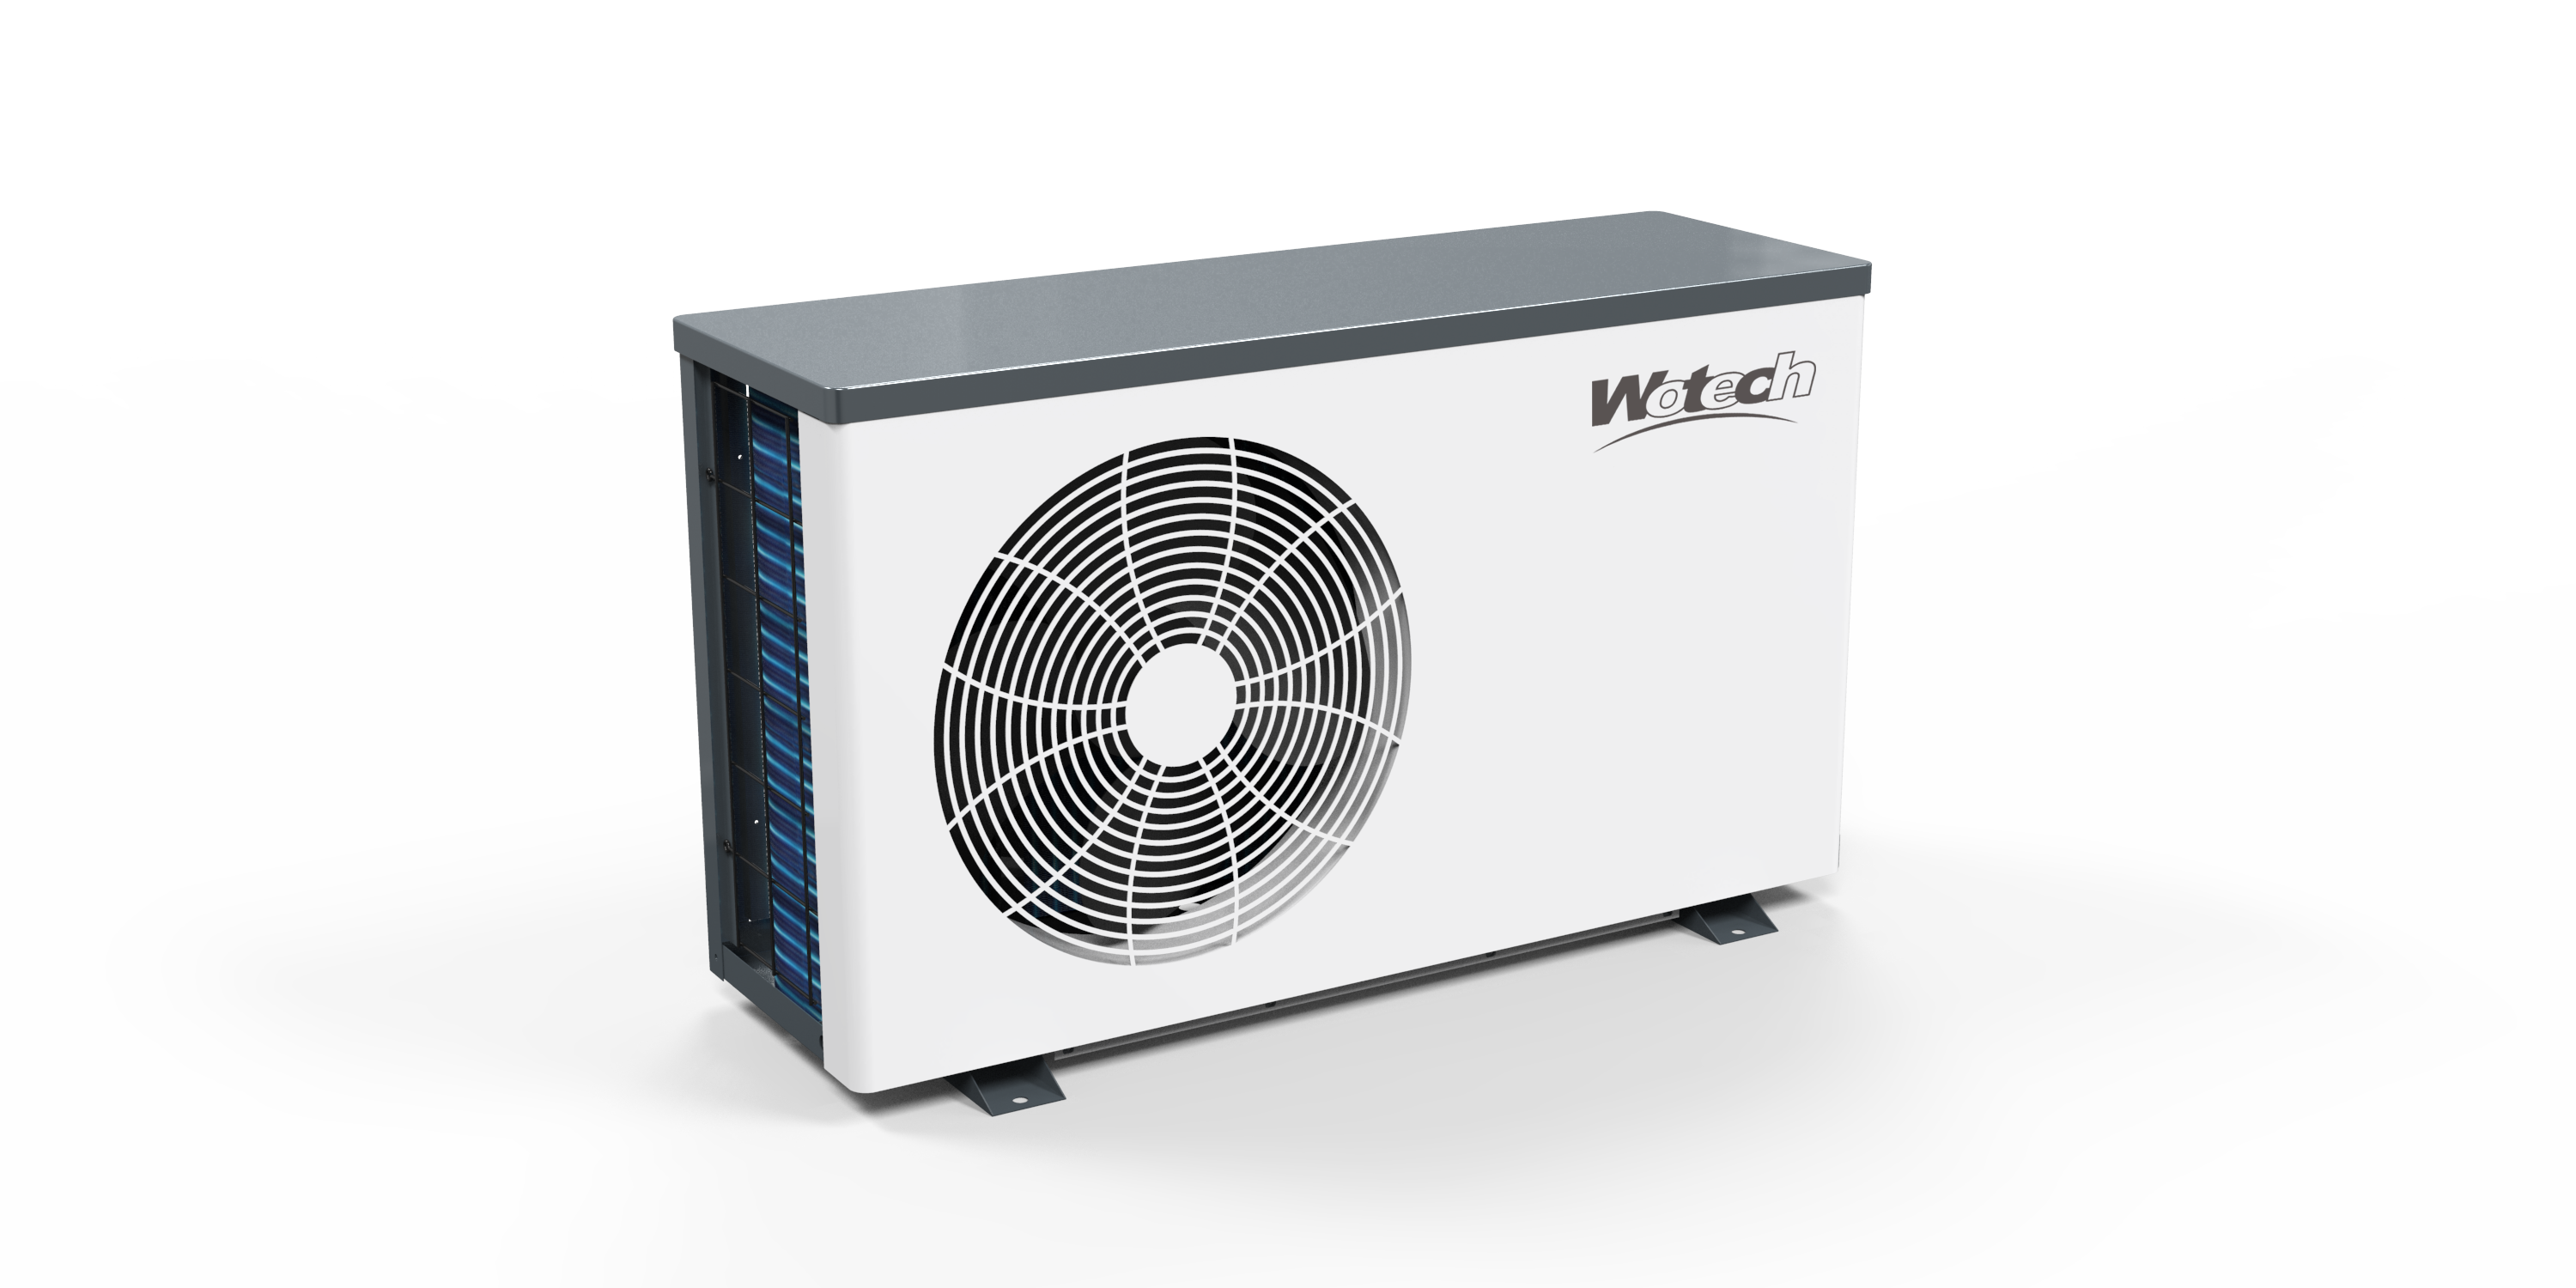 Umweltfreundliche Inverter-Luft-Schwimmbad-Wärmepumpe mit WIFI-Konnektivität und hohem COP